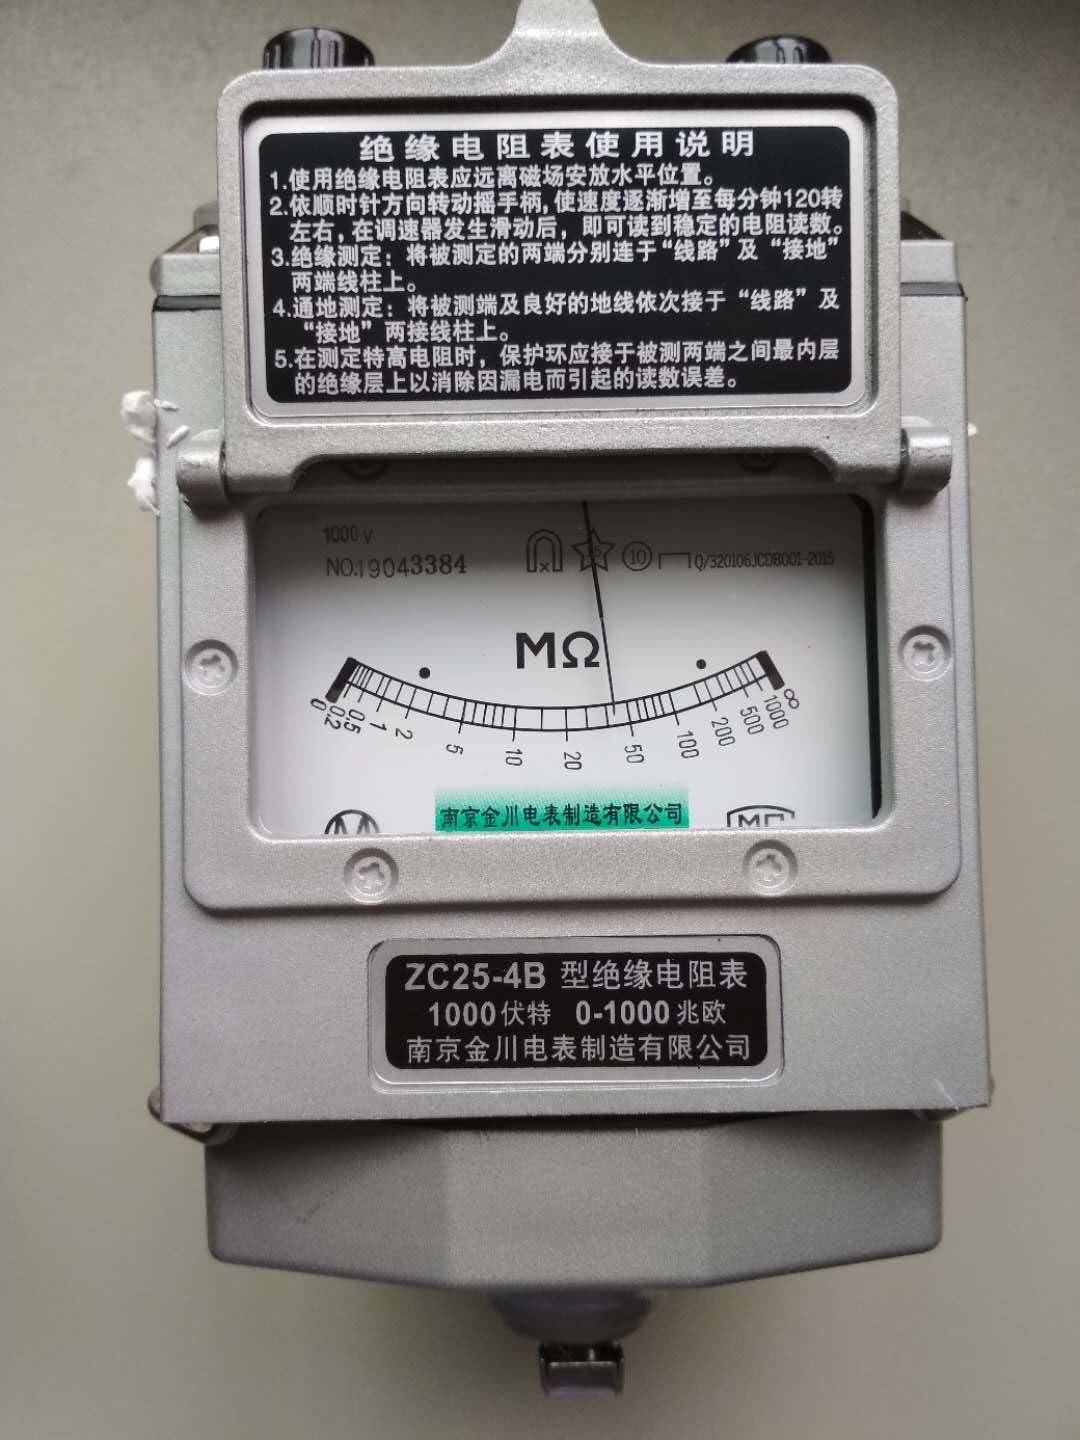 连云港长江无线电厂公司,连云港高压耐压测试仪